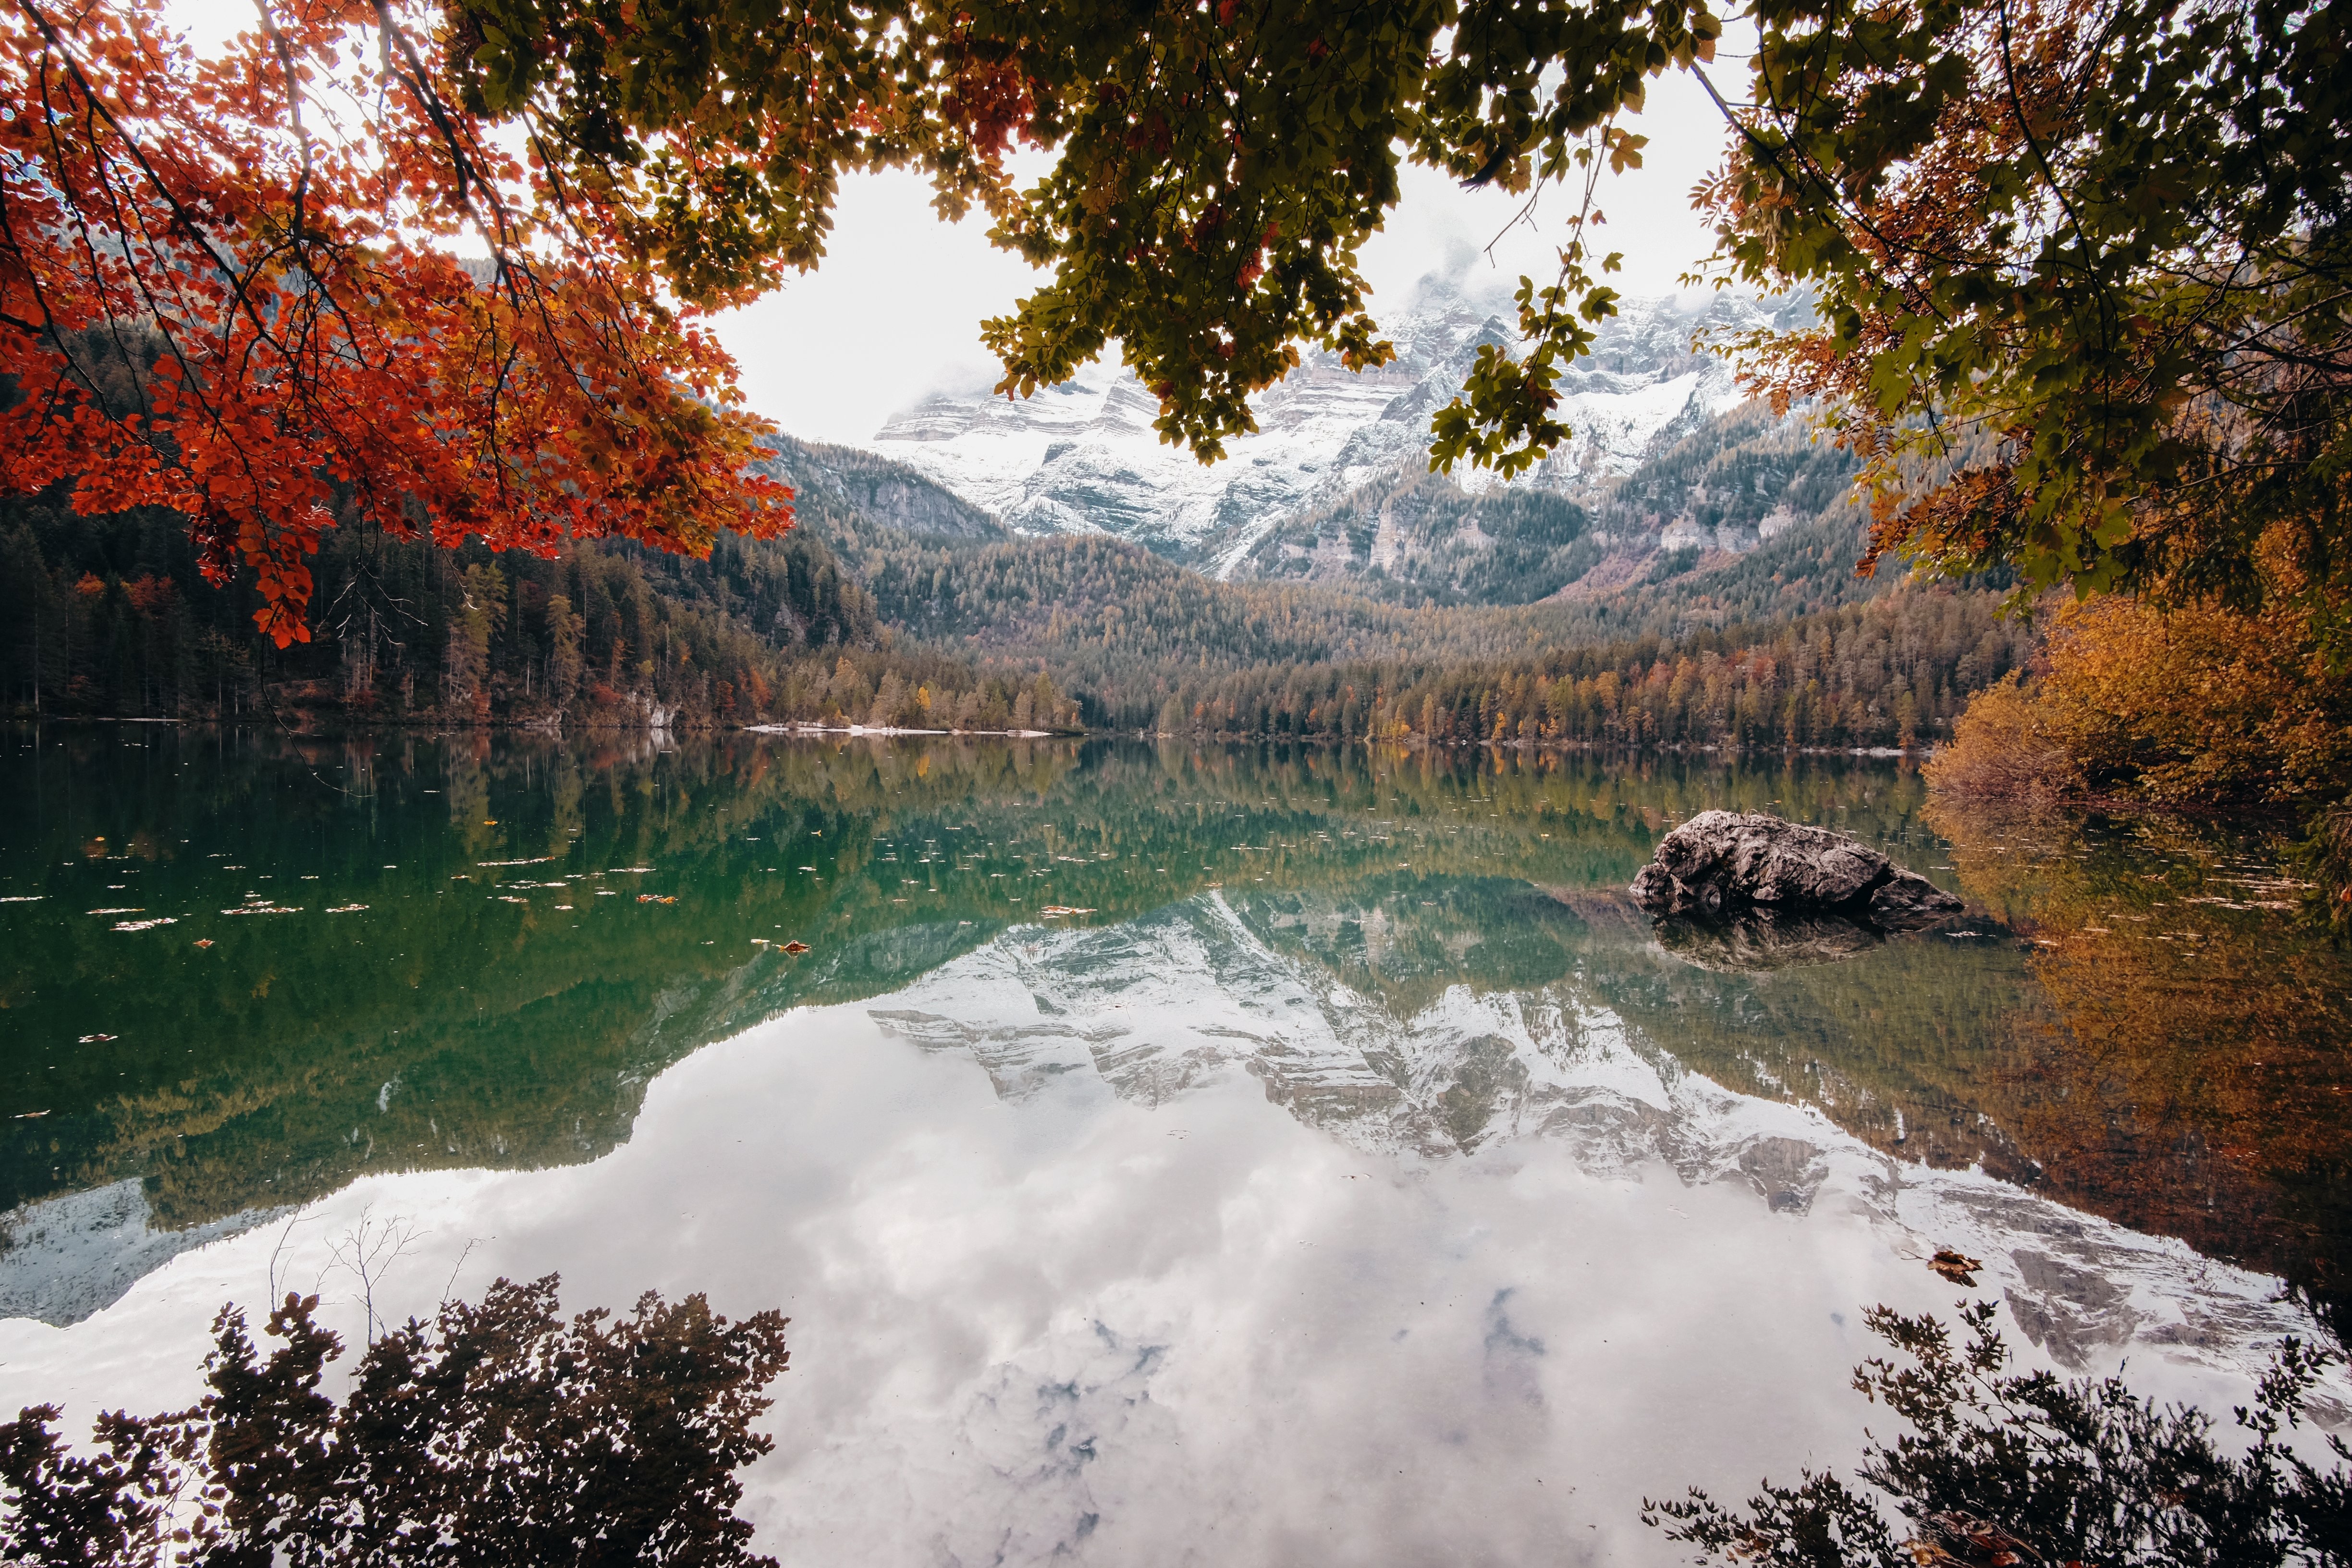 Foto de outono vista de um lago com montanhas cobertas de branco 